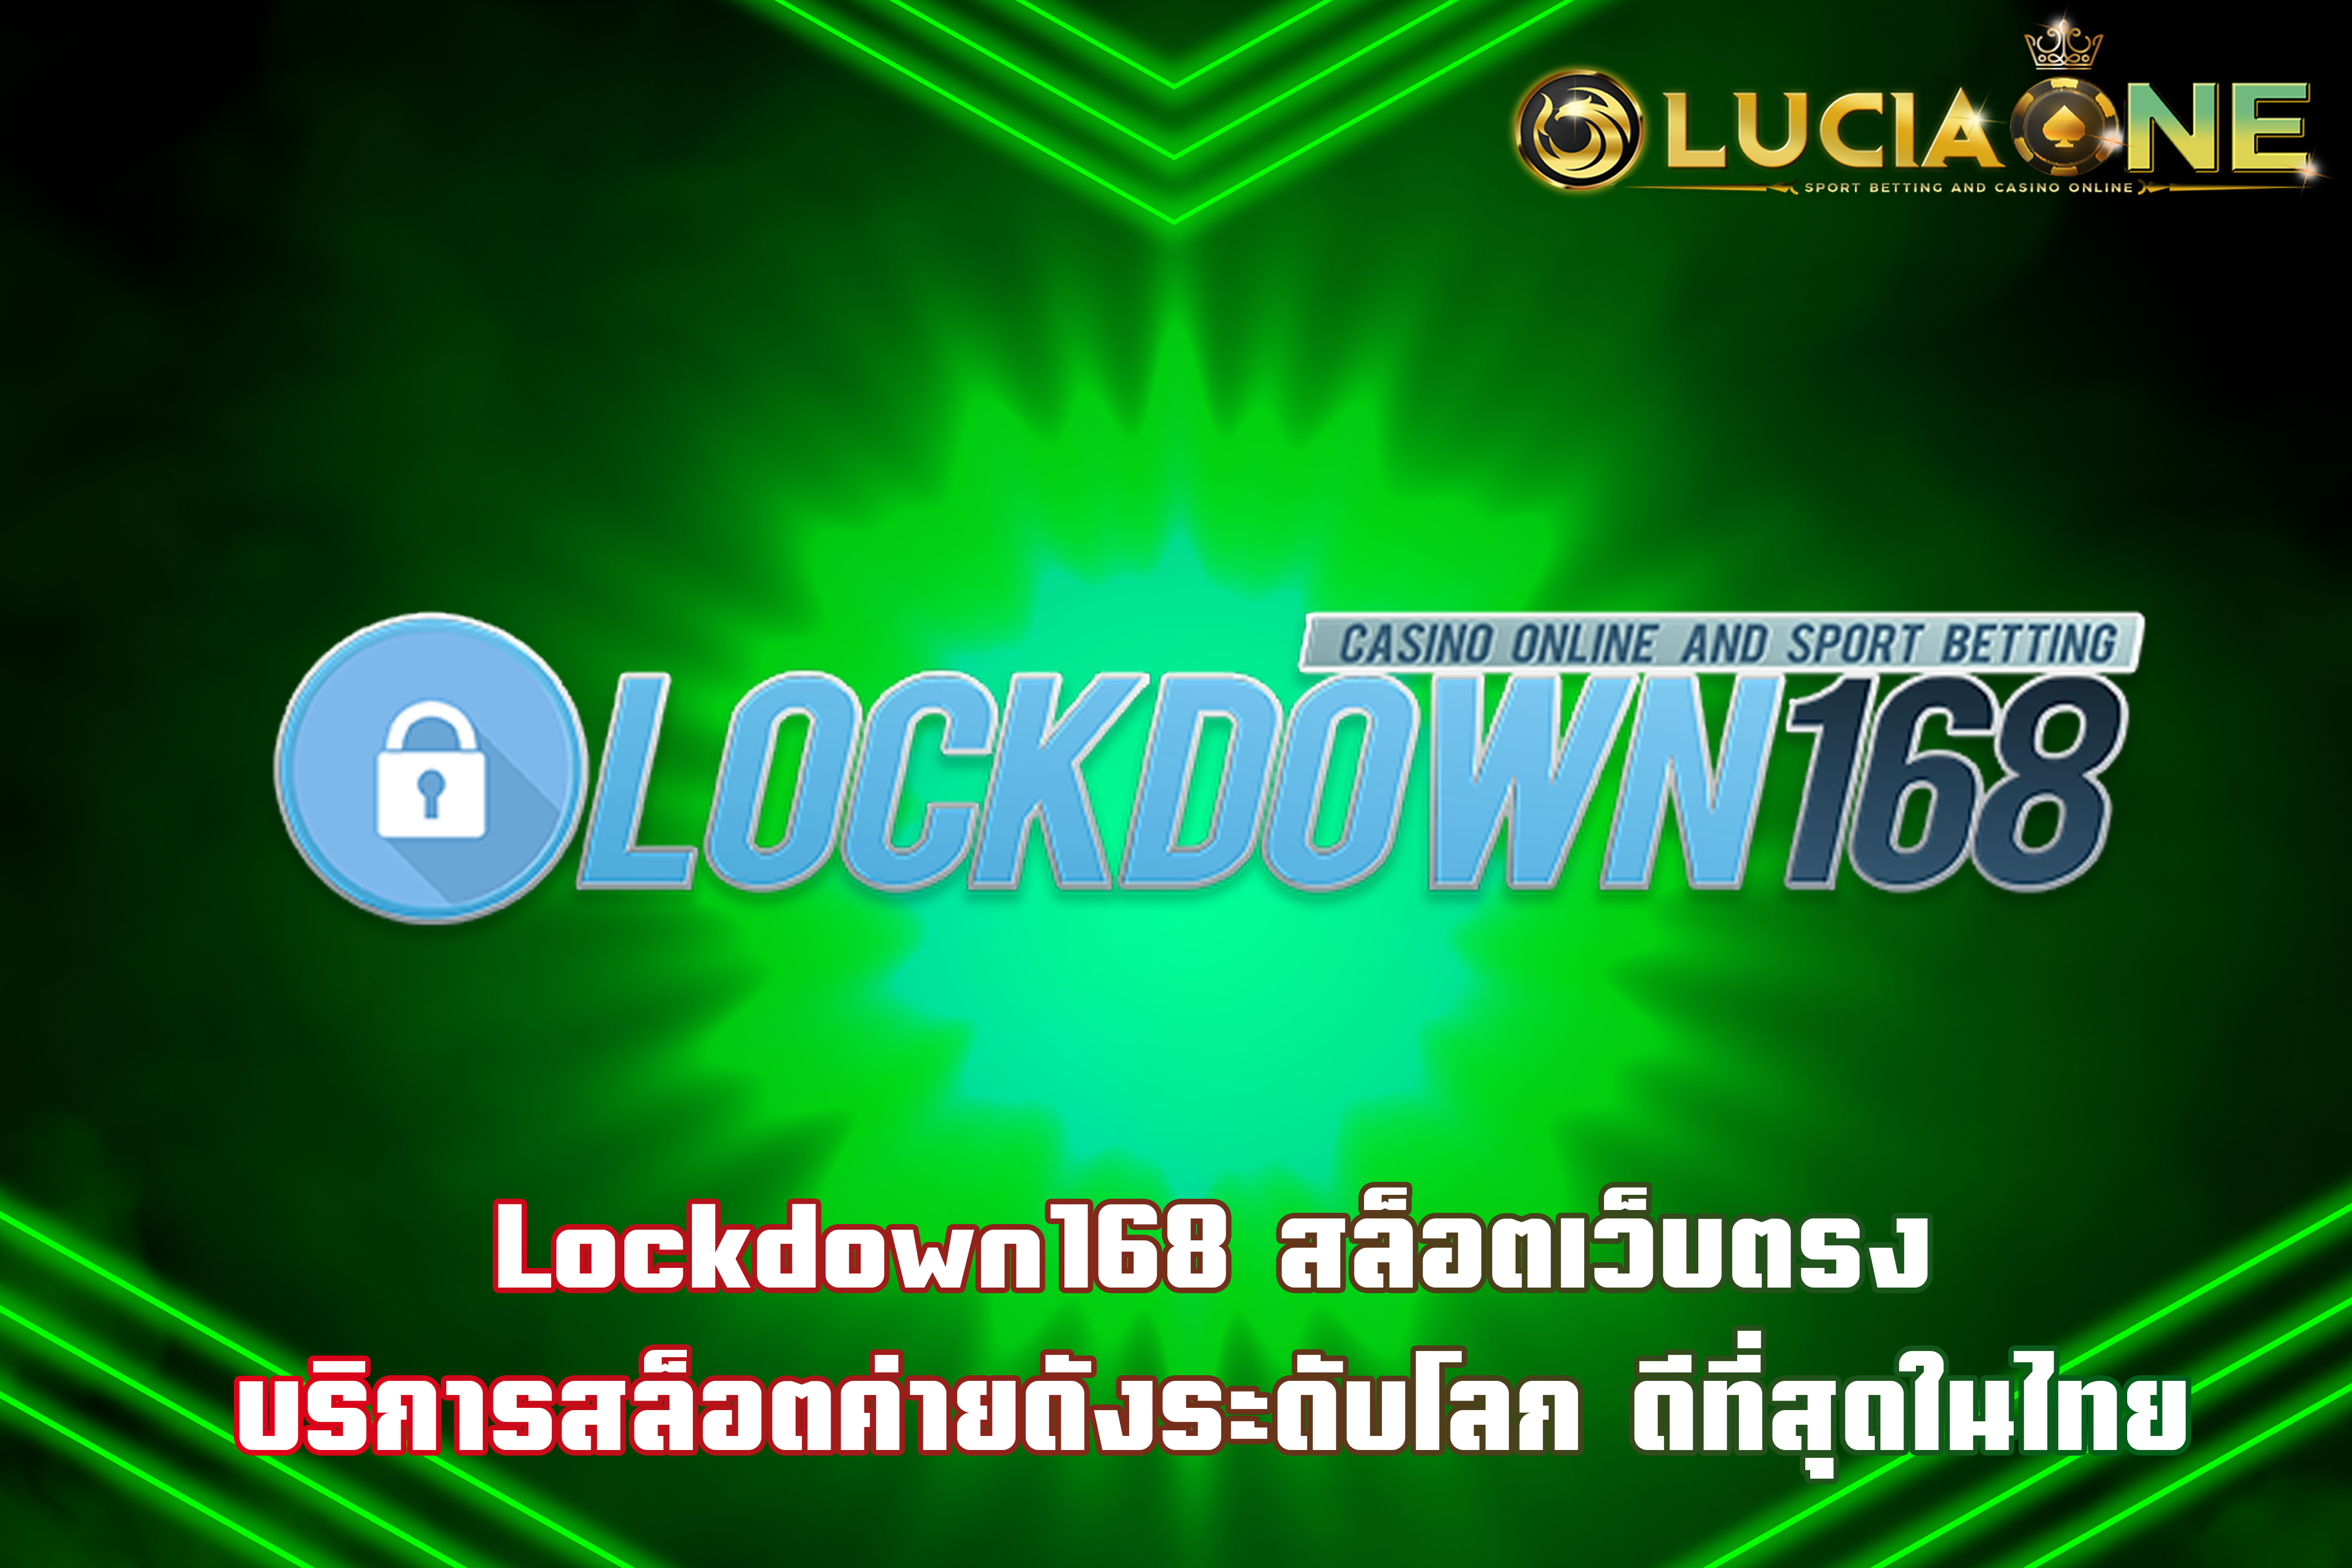 Lockdown168 สล็อตเว็บตรง บริการสล็อตค่ายดังระดับโลก ดีที่สุดในไทย